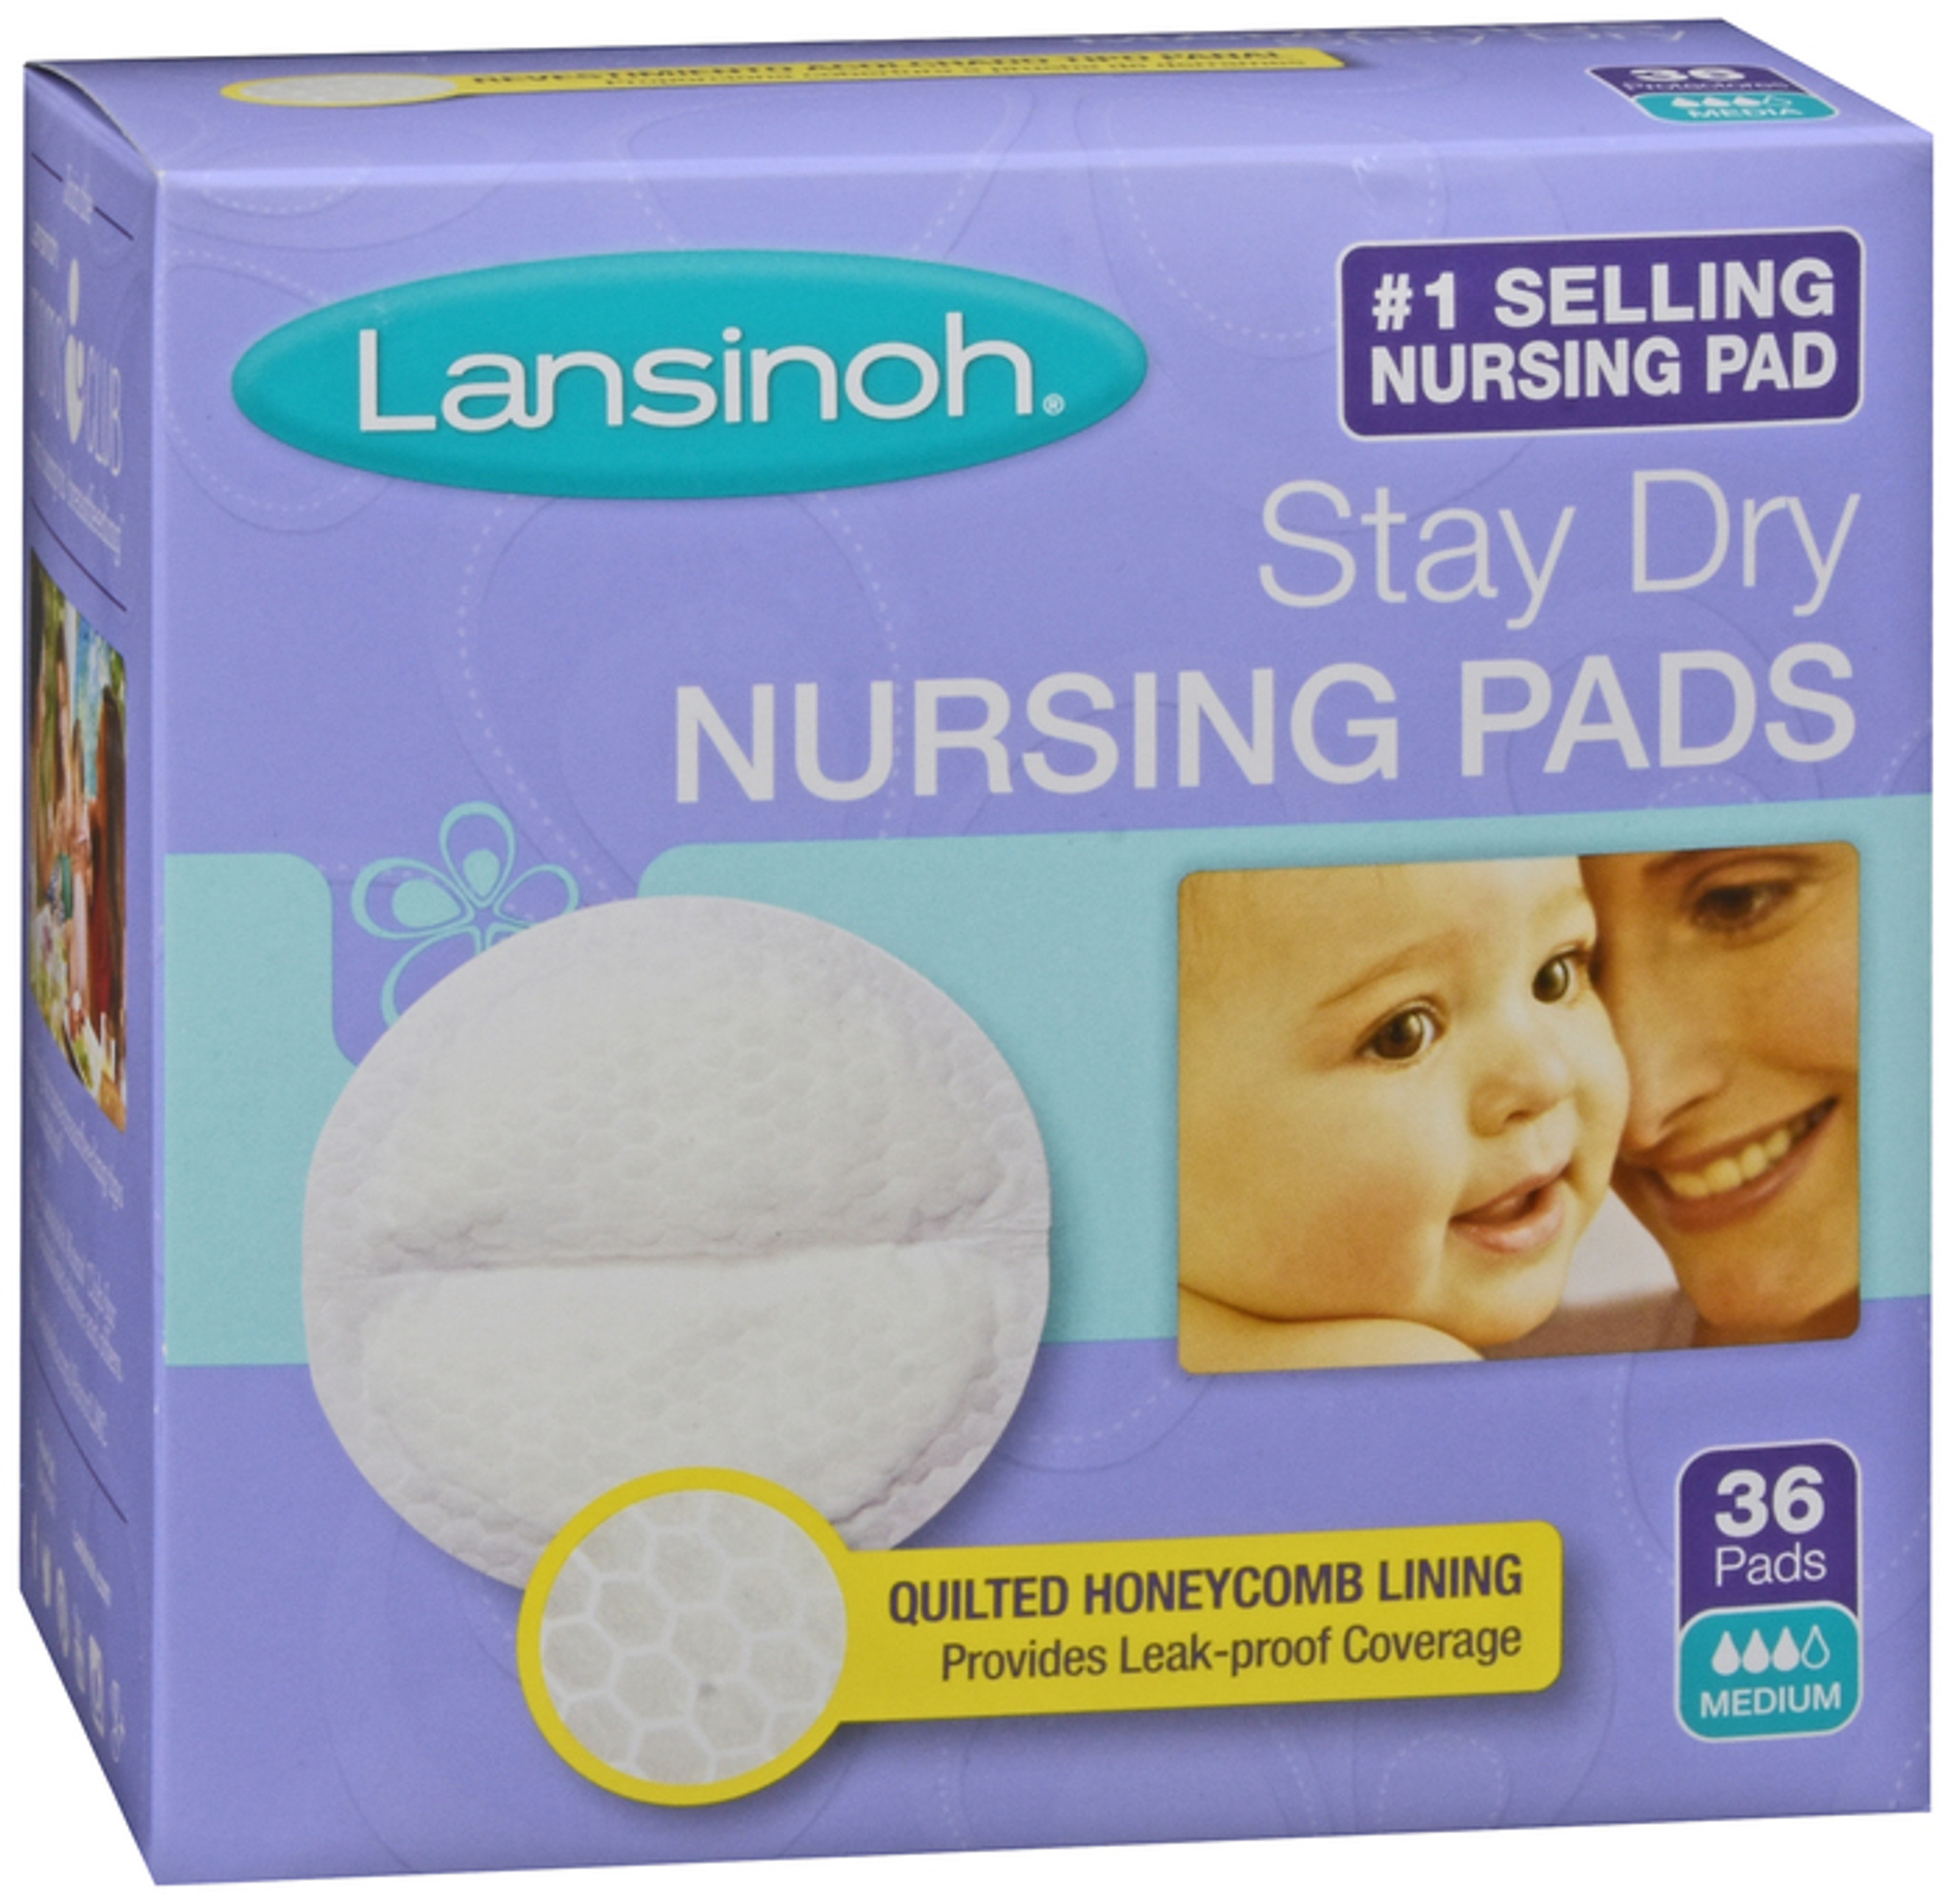 Lansinoh disposable nursing pads 36 pieces buy online